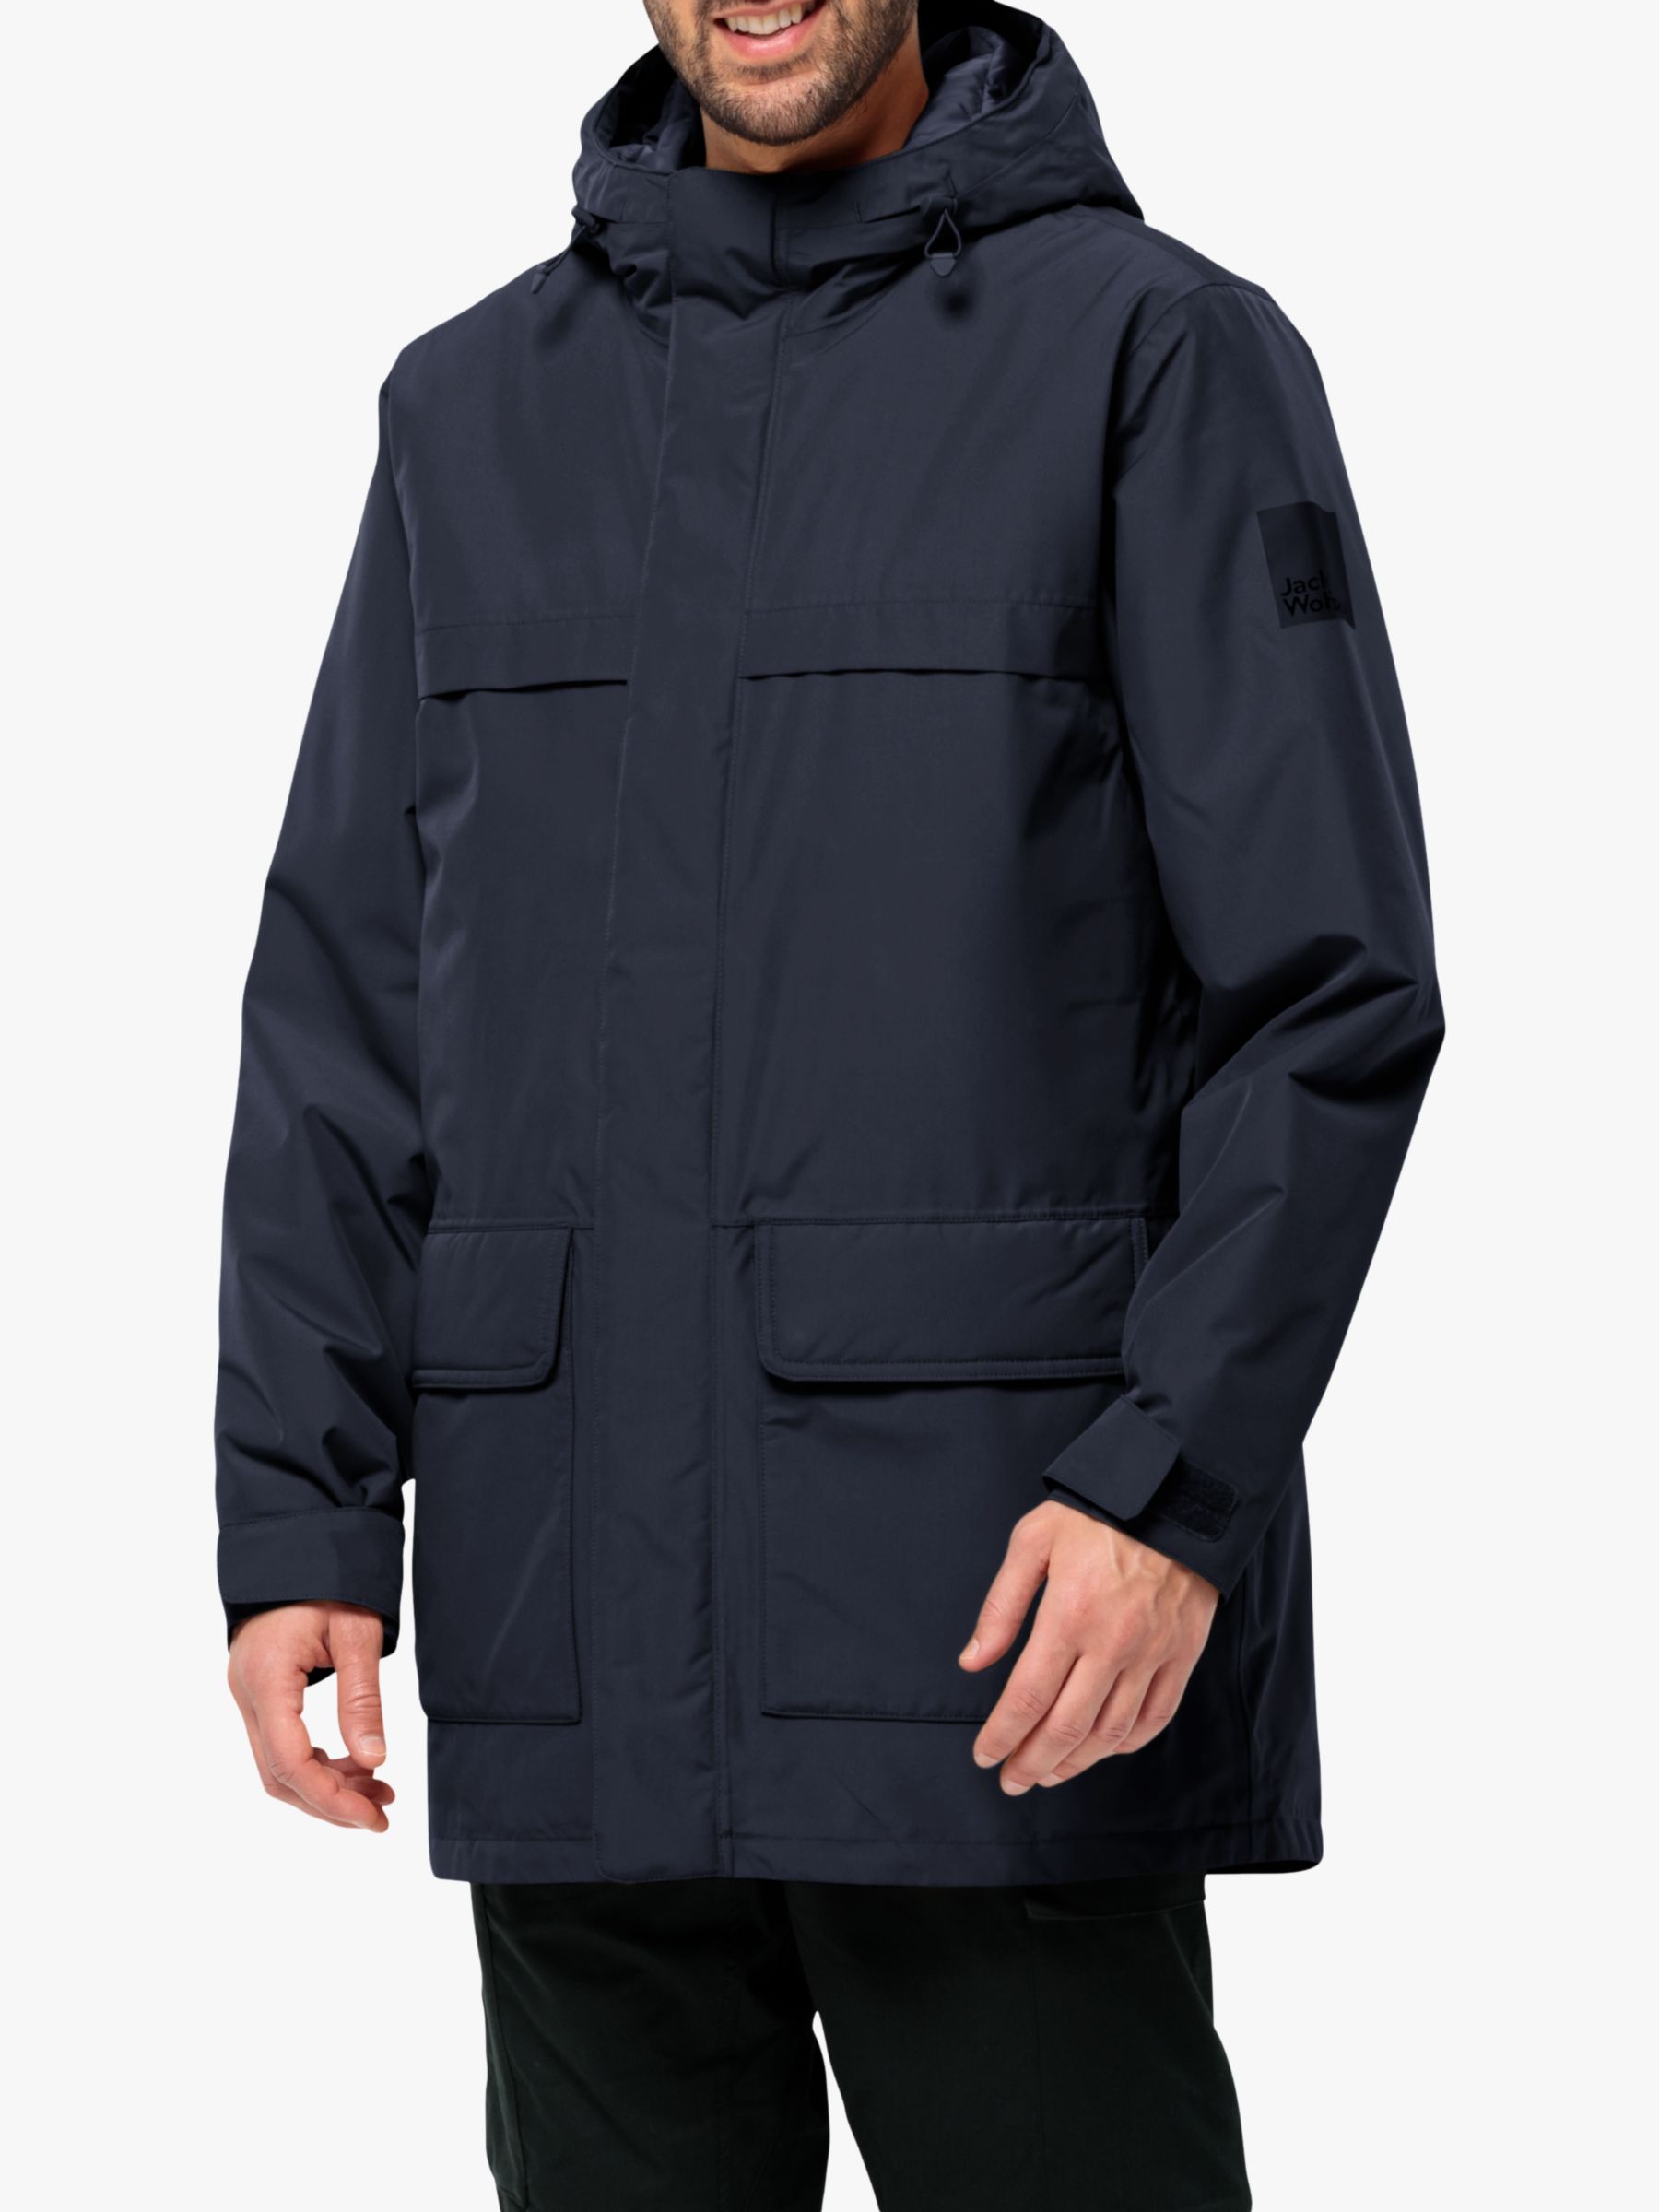 Jack Wolfskin Winterlager Men's Waterproof Parka Coat, Night Blue, M